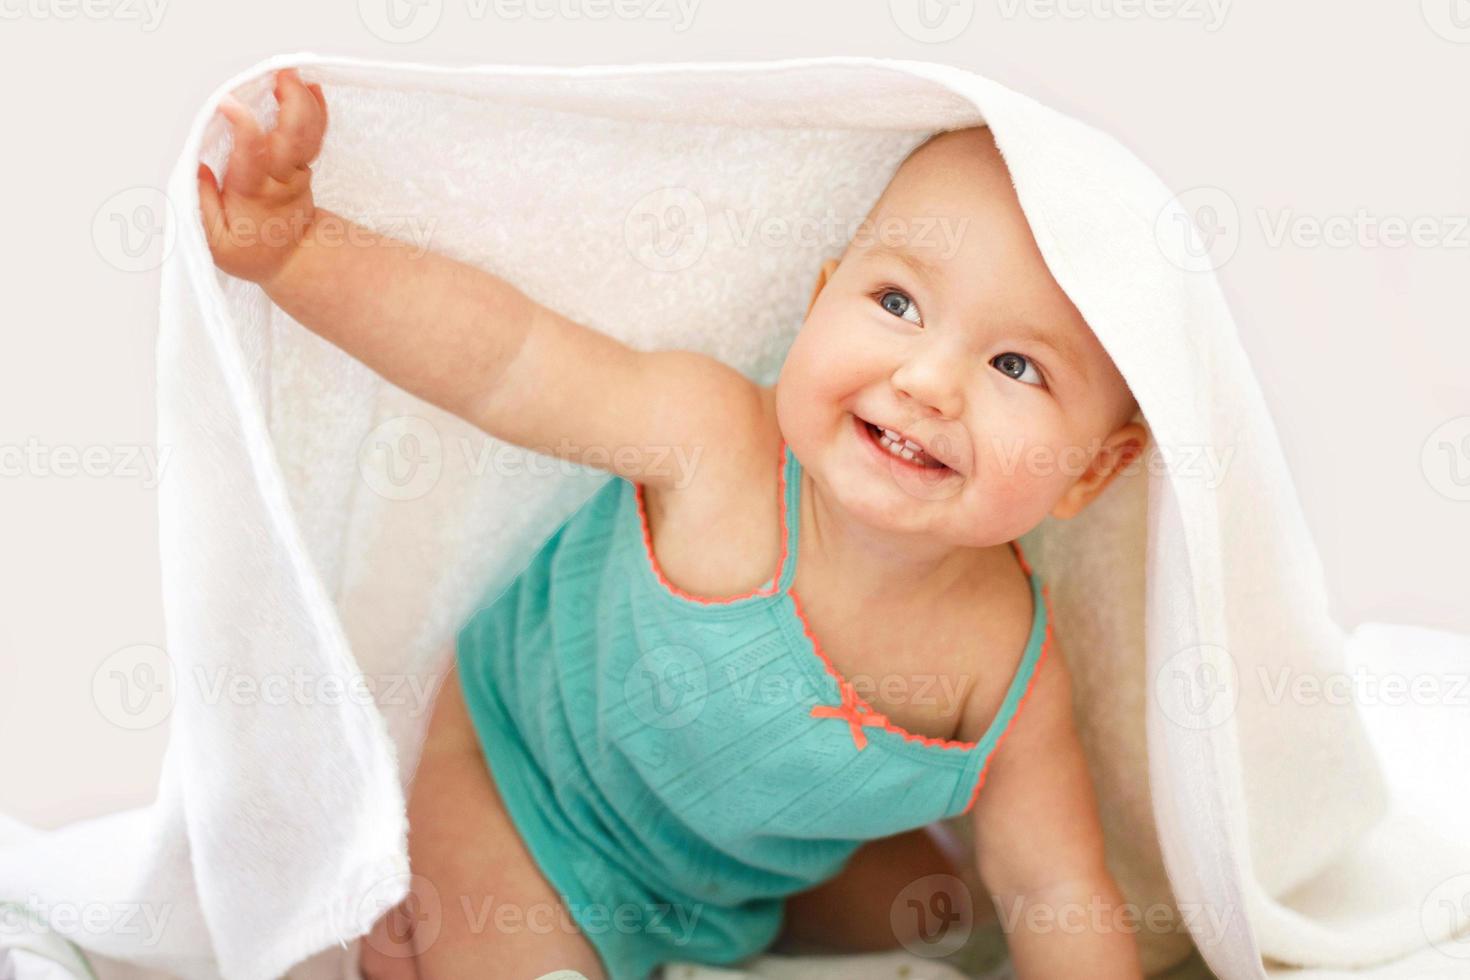 mignon bébé souriant regardant la caméra sous une serviette blanche sur fond blanc. portrait d'un enfant mignon photo